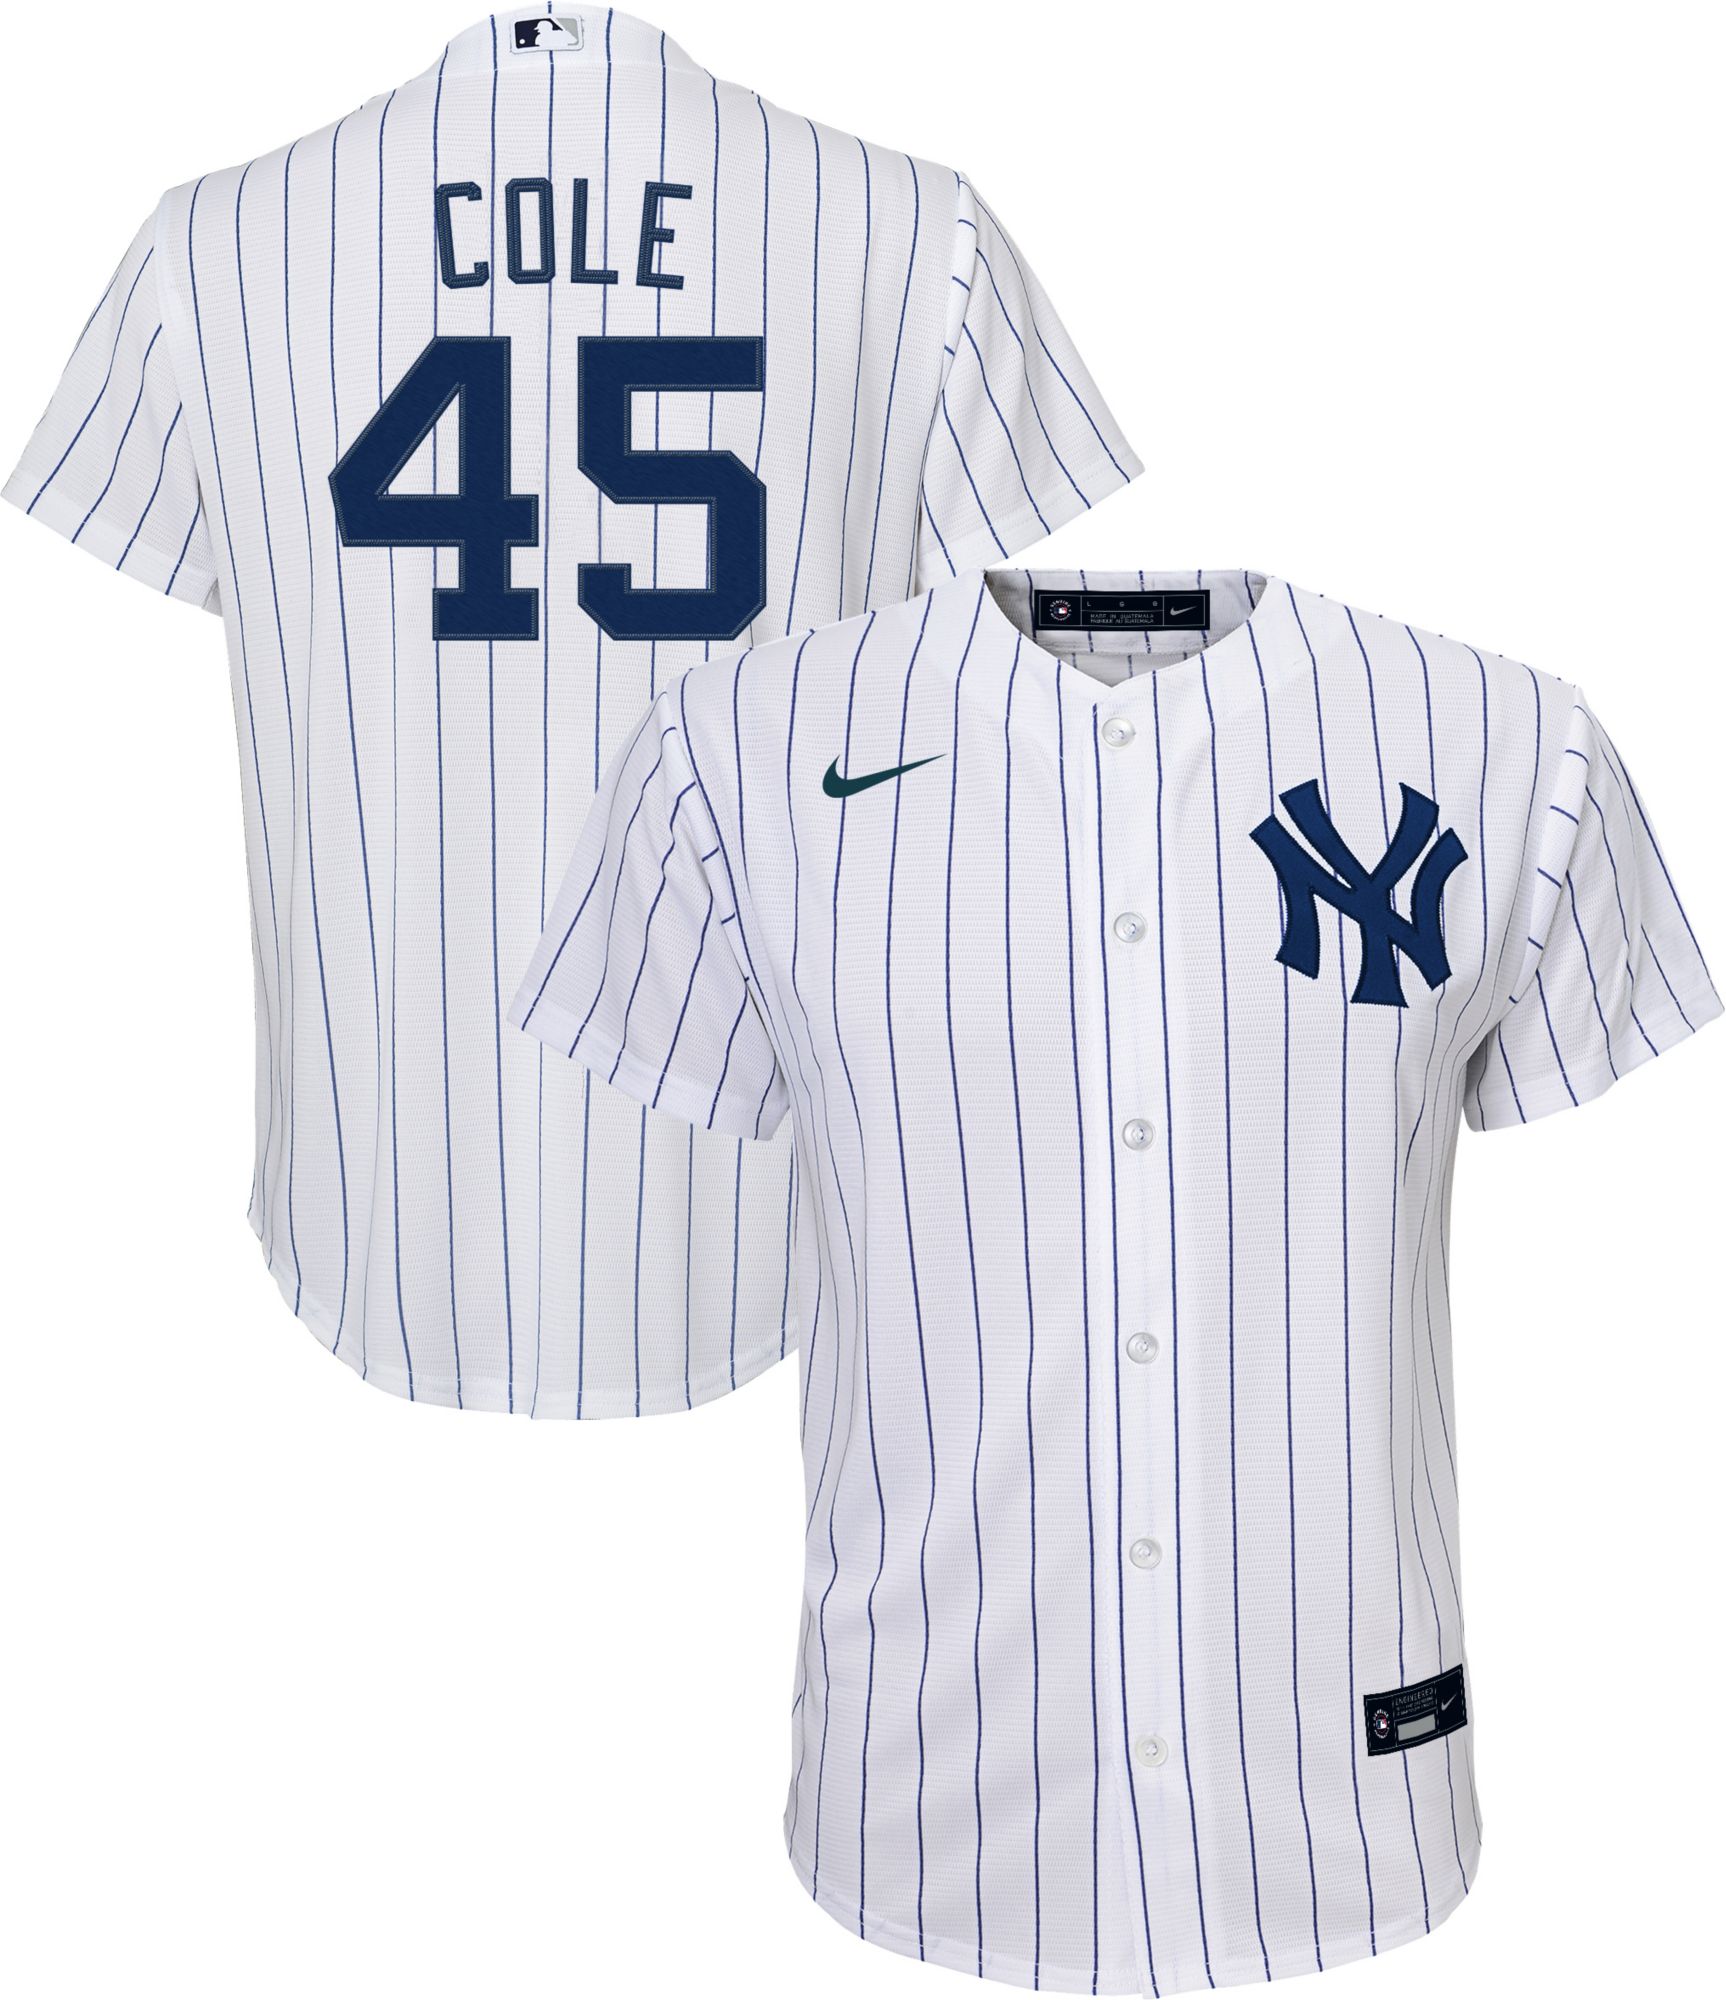 Fanatics NY Yankees Pinstripe MLB Jersey Shirt